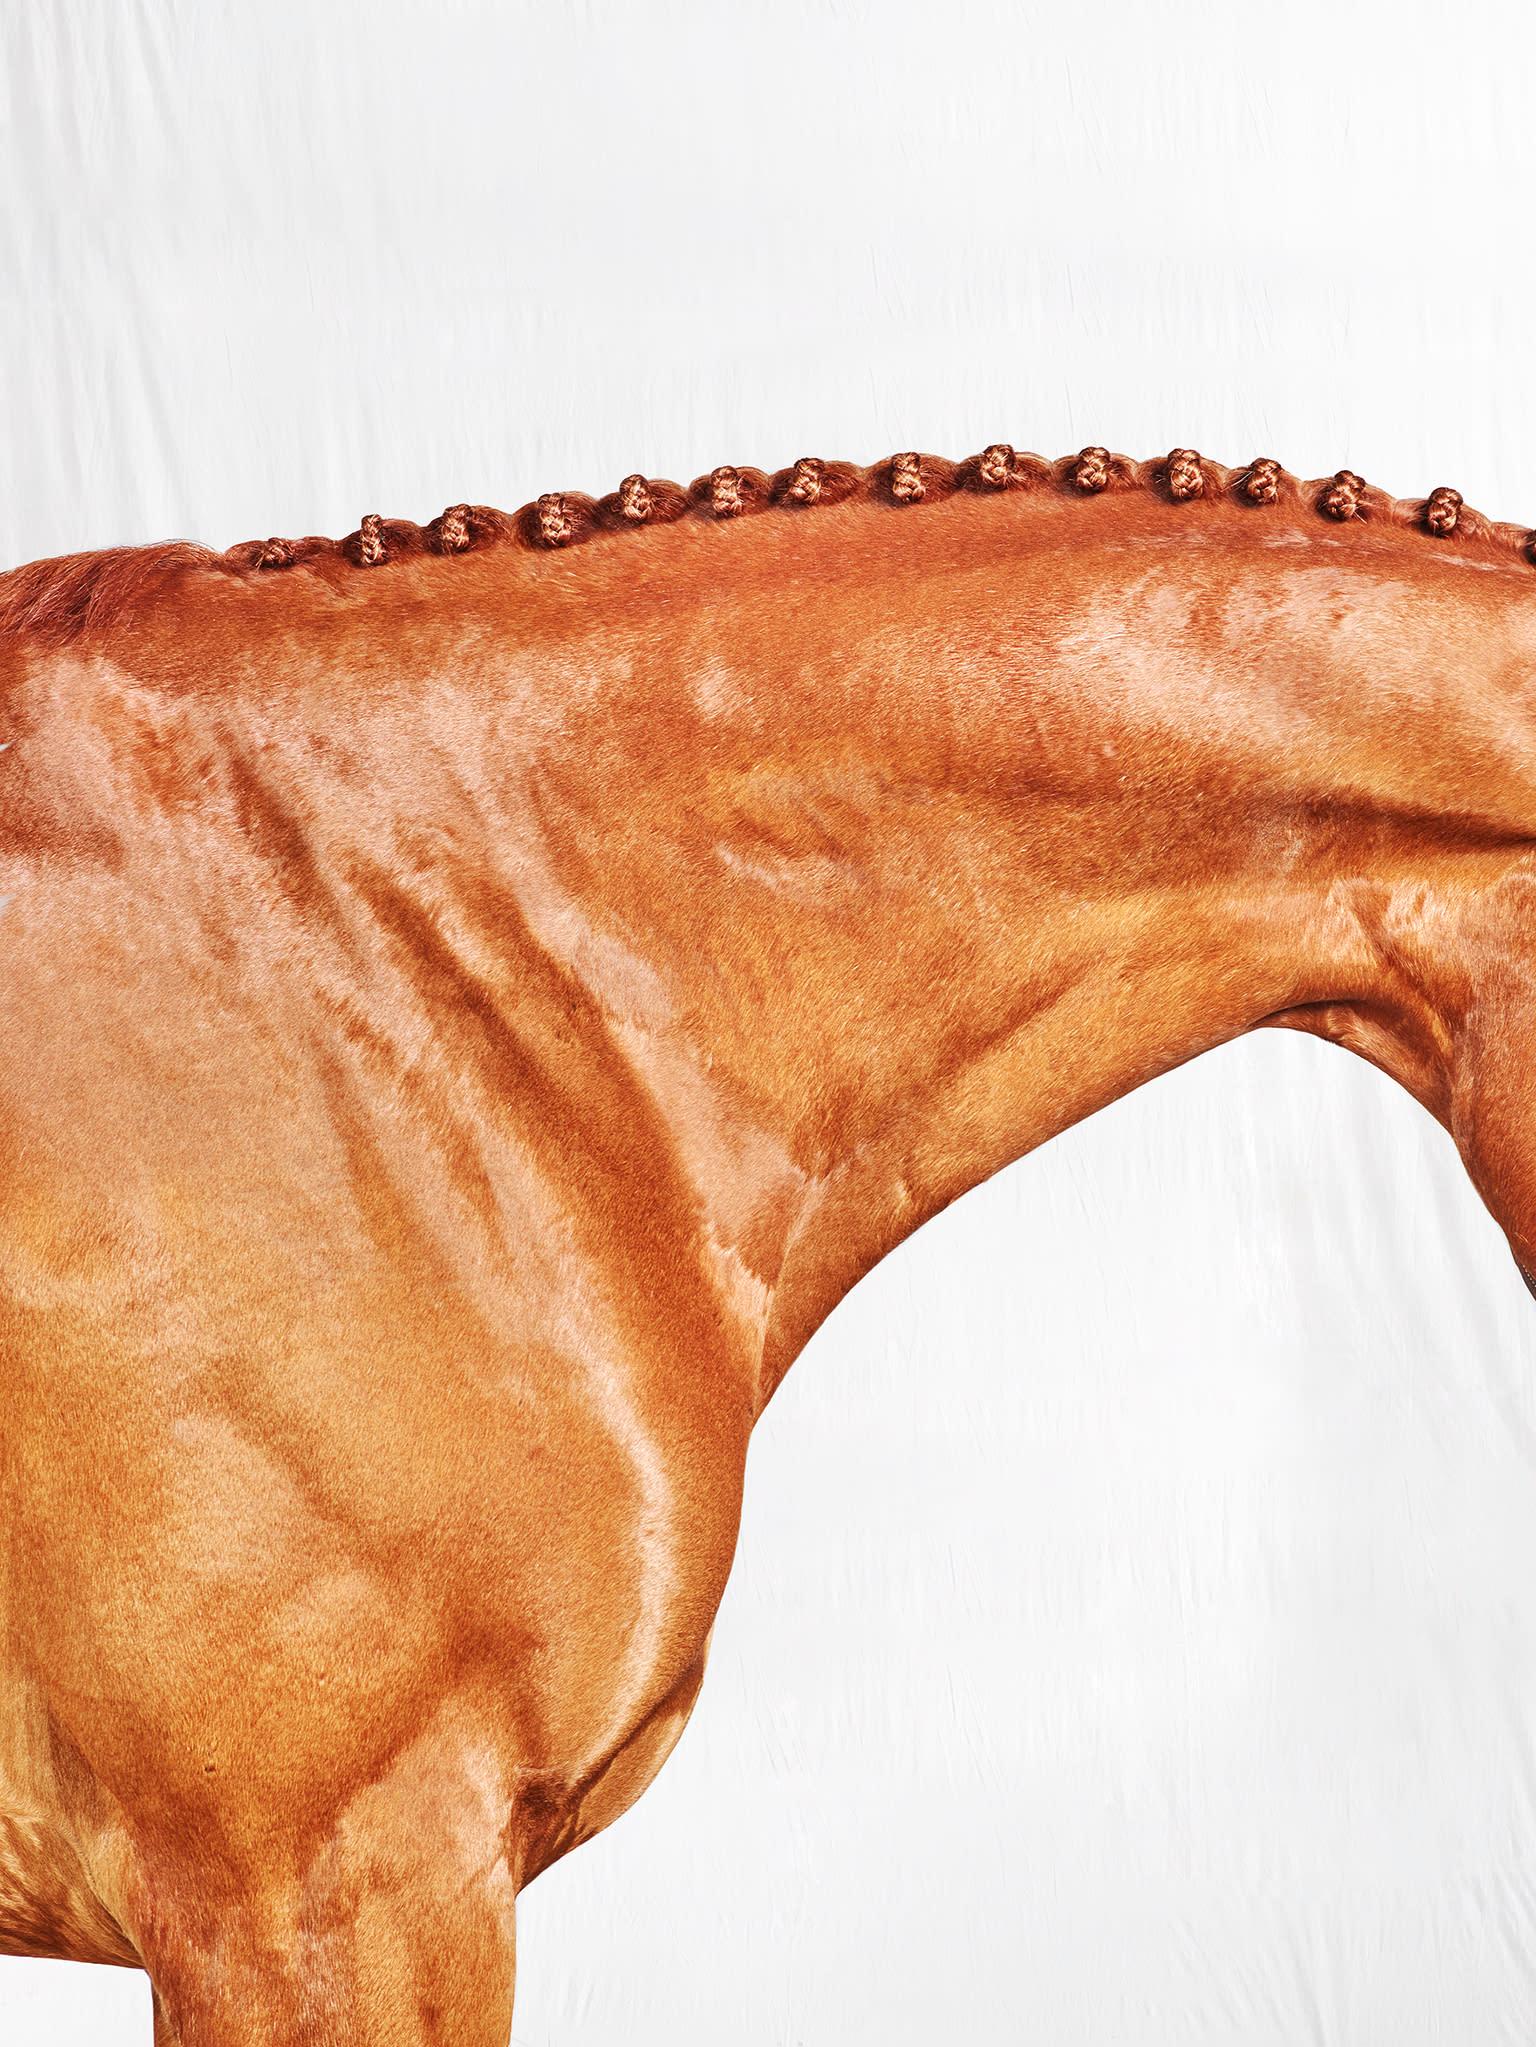 Romy Neck - Vollfarbiges Pferdeporträt in limitierter Auflage 2017 – Photograph von Juan Lamarca